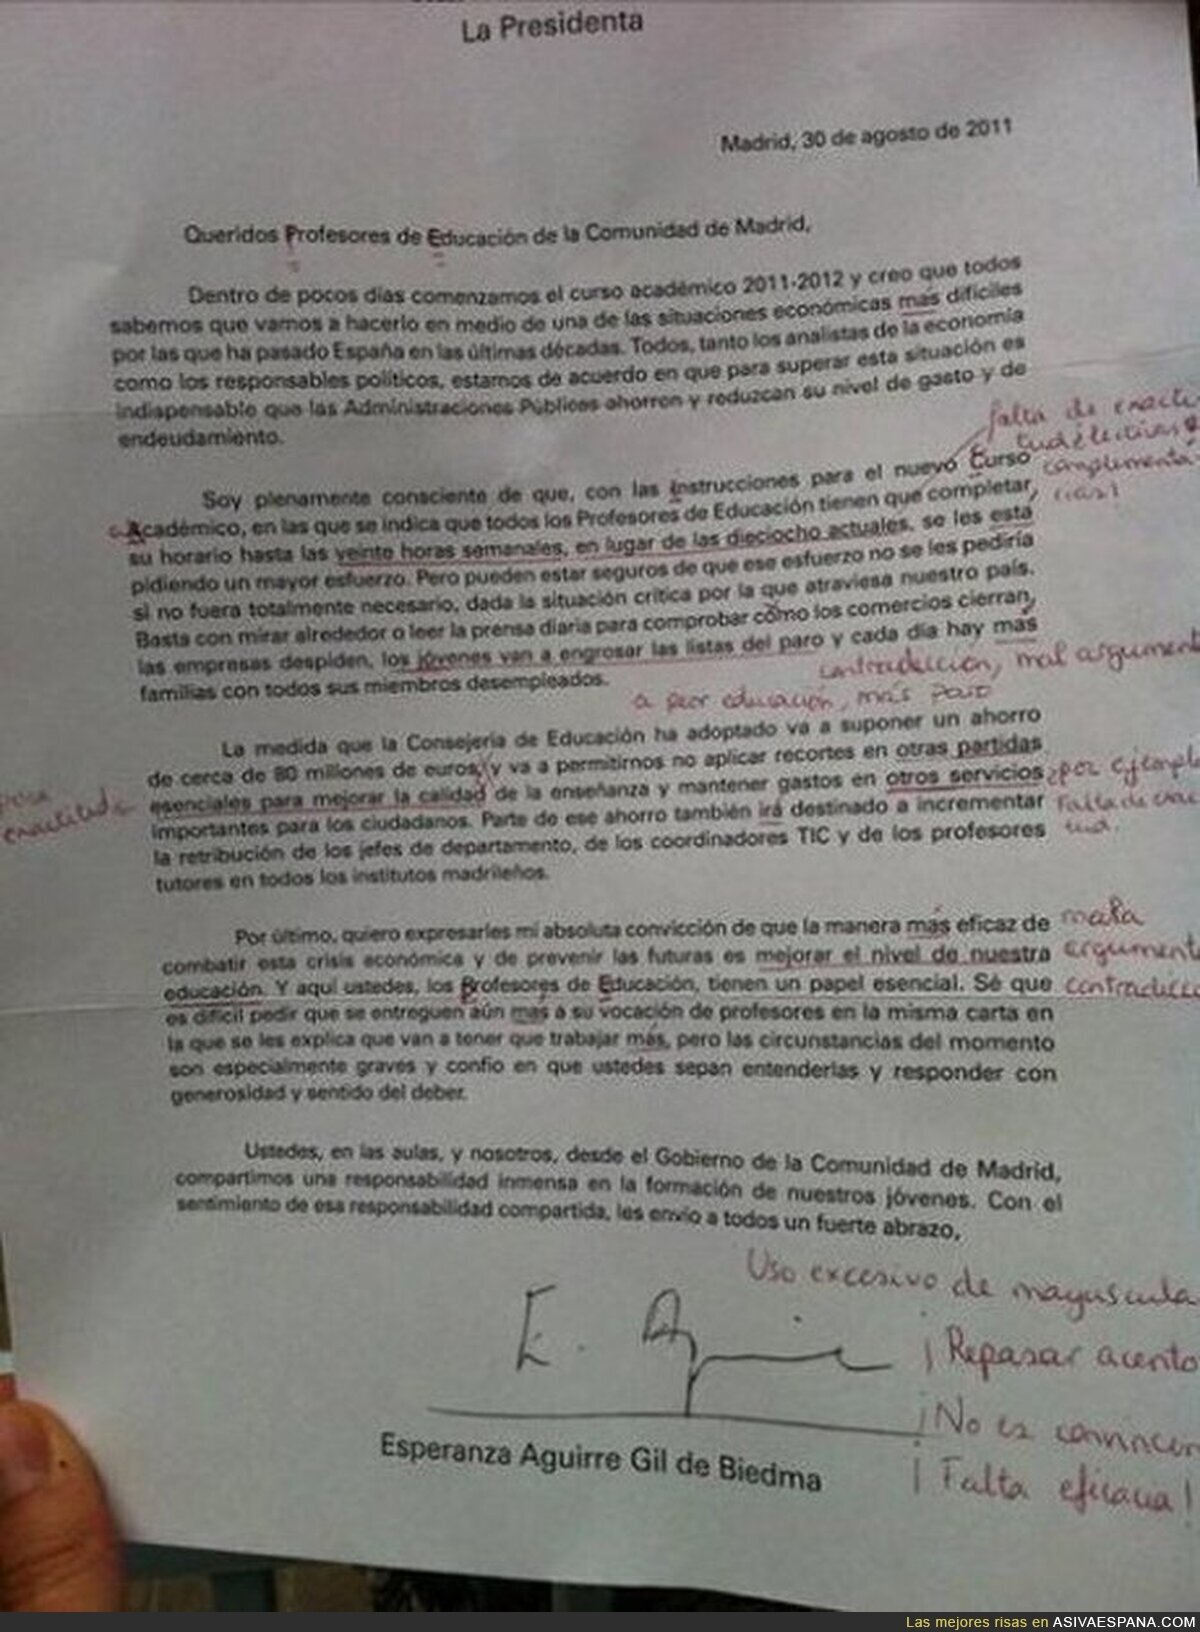 ESPERANZA AGUIRRE - Quiere reducir la educación cuando ni ella misma sabe redactar una carta